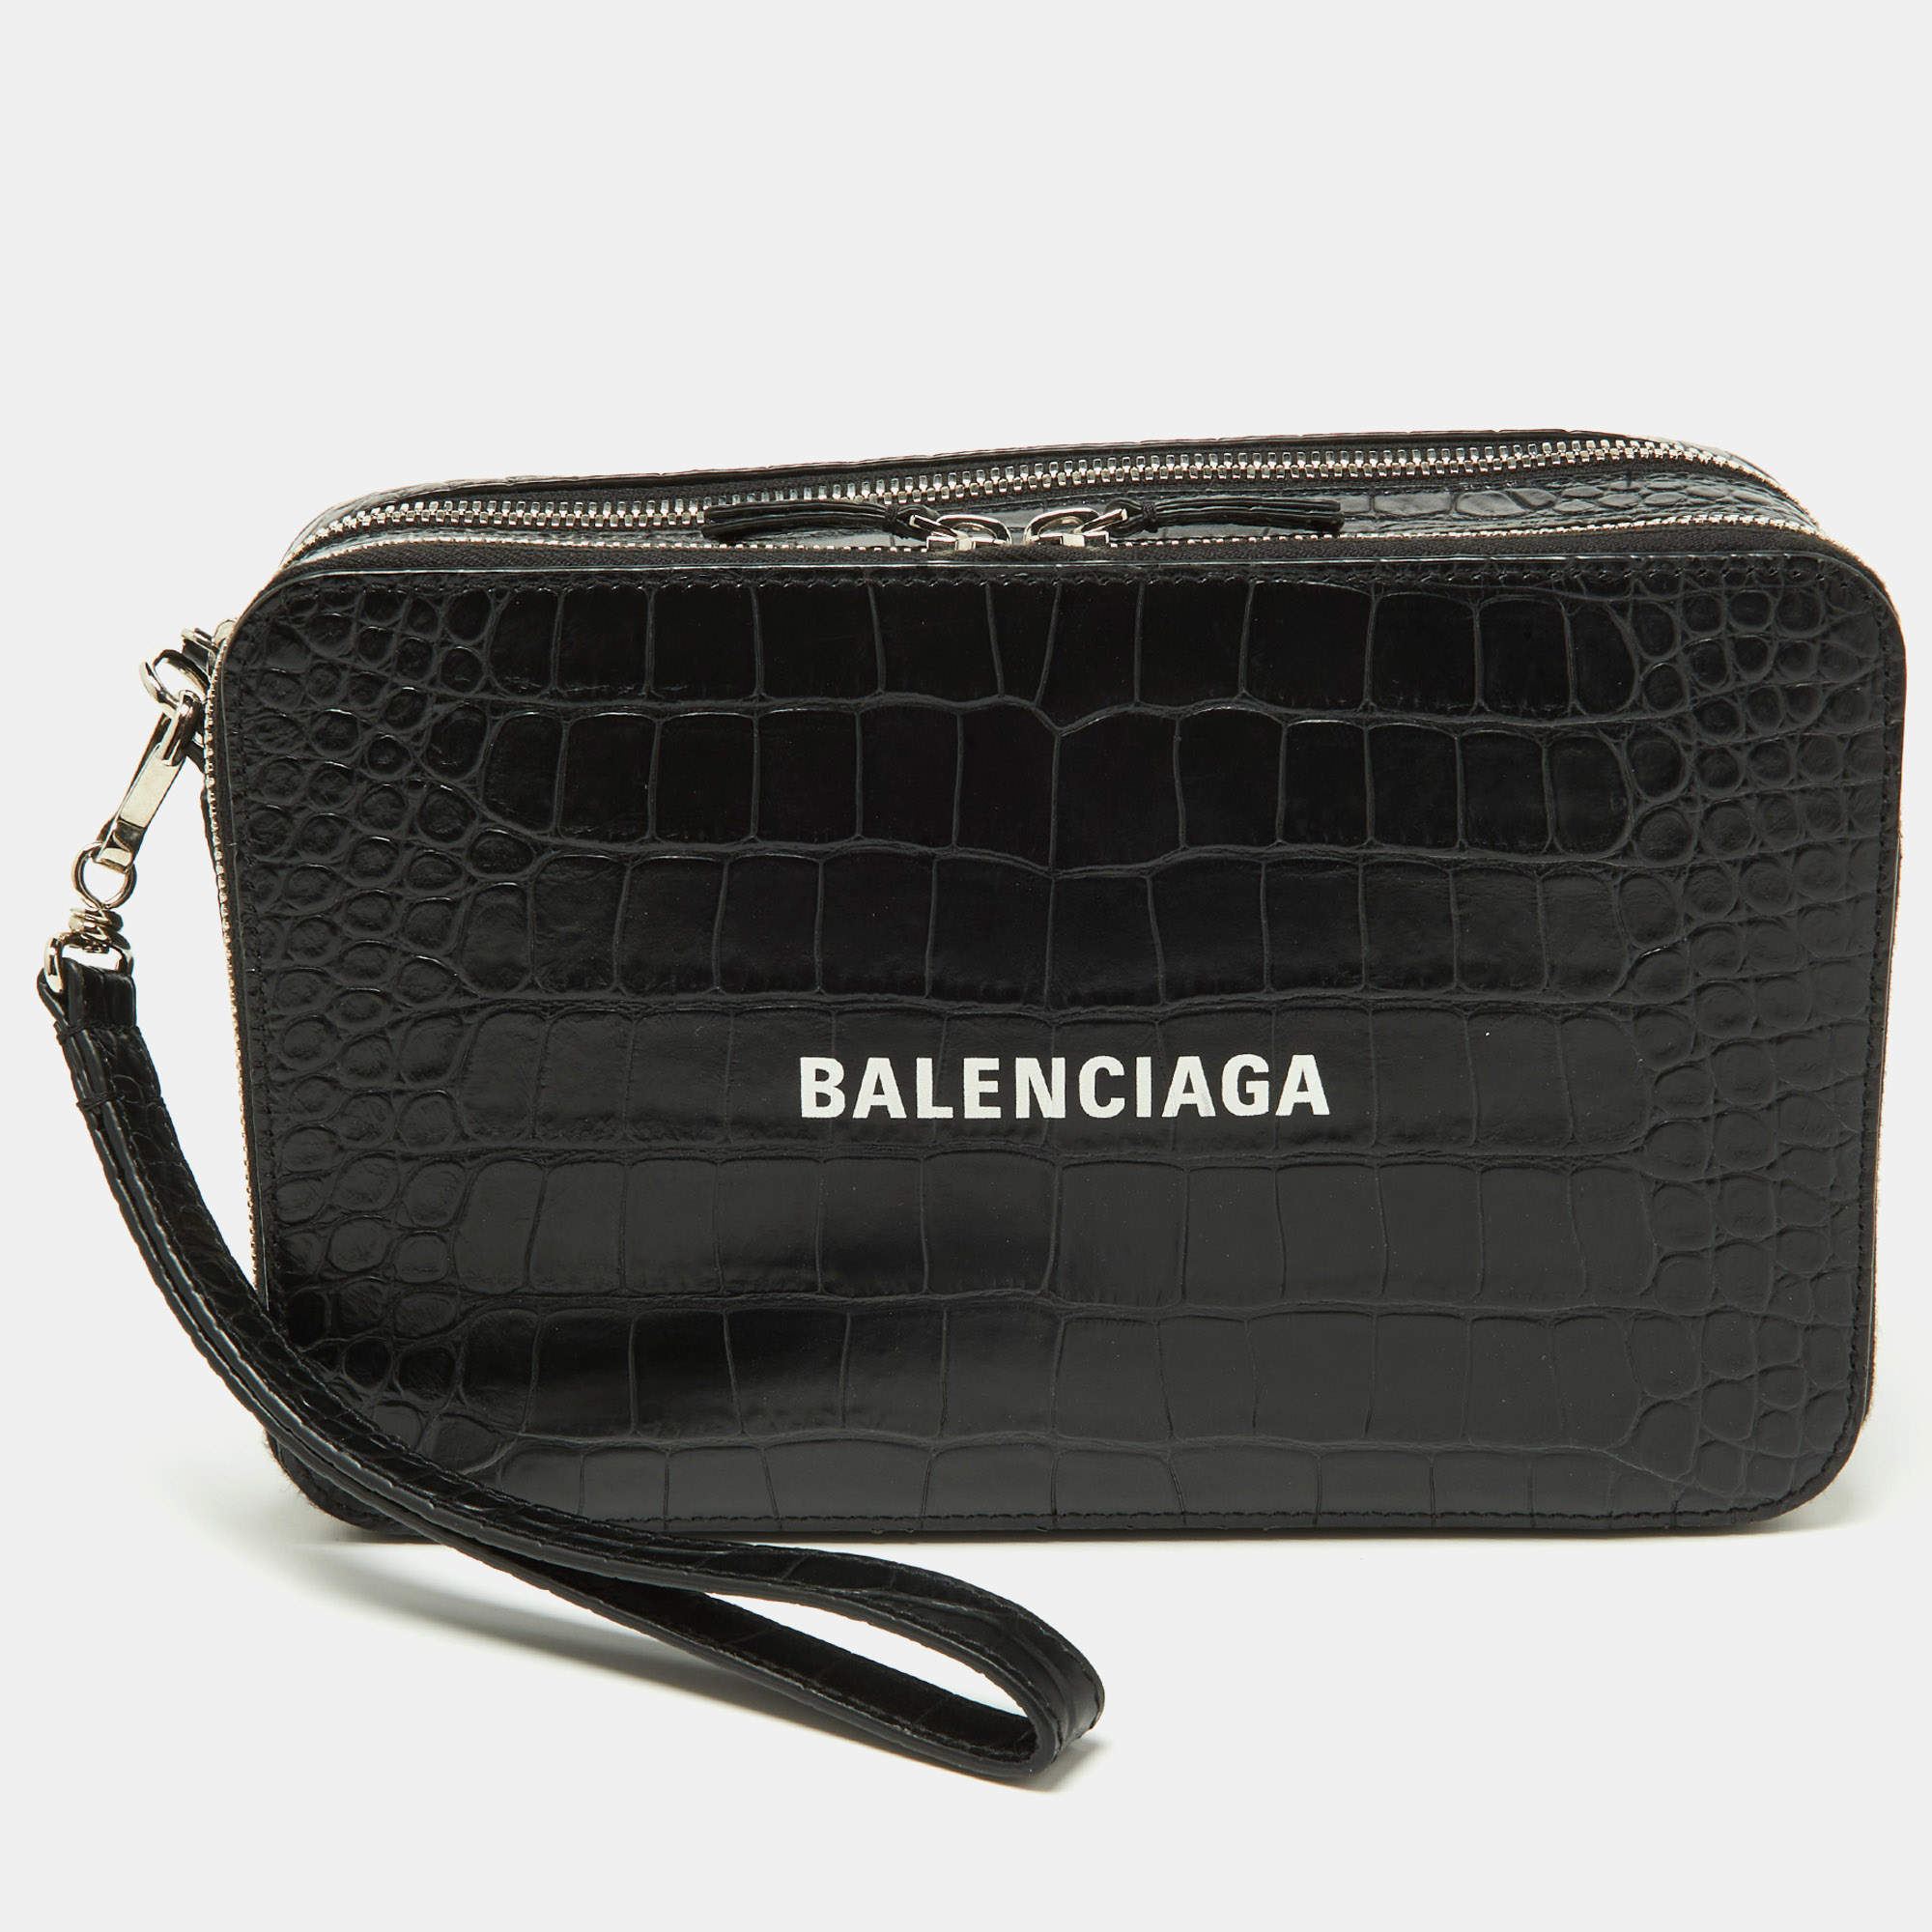 Balenciaga Bags for Women